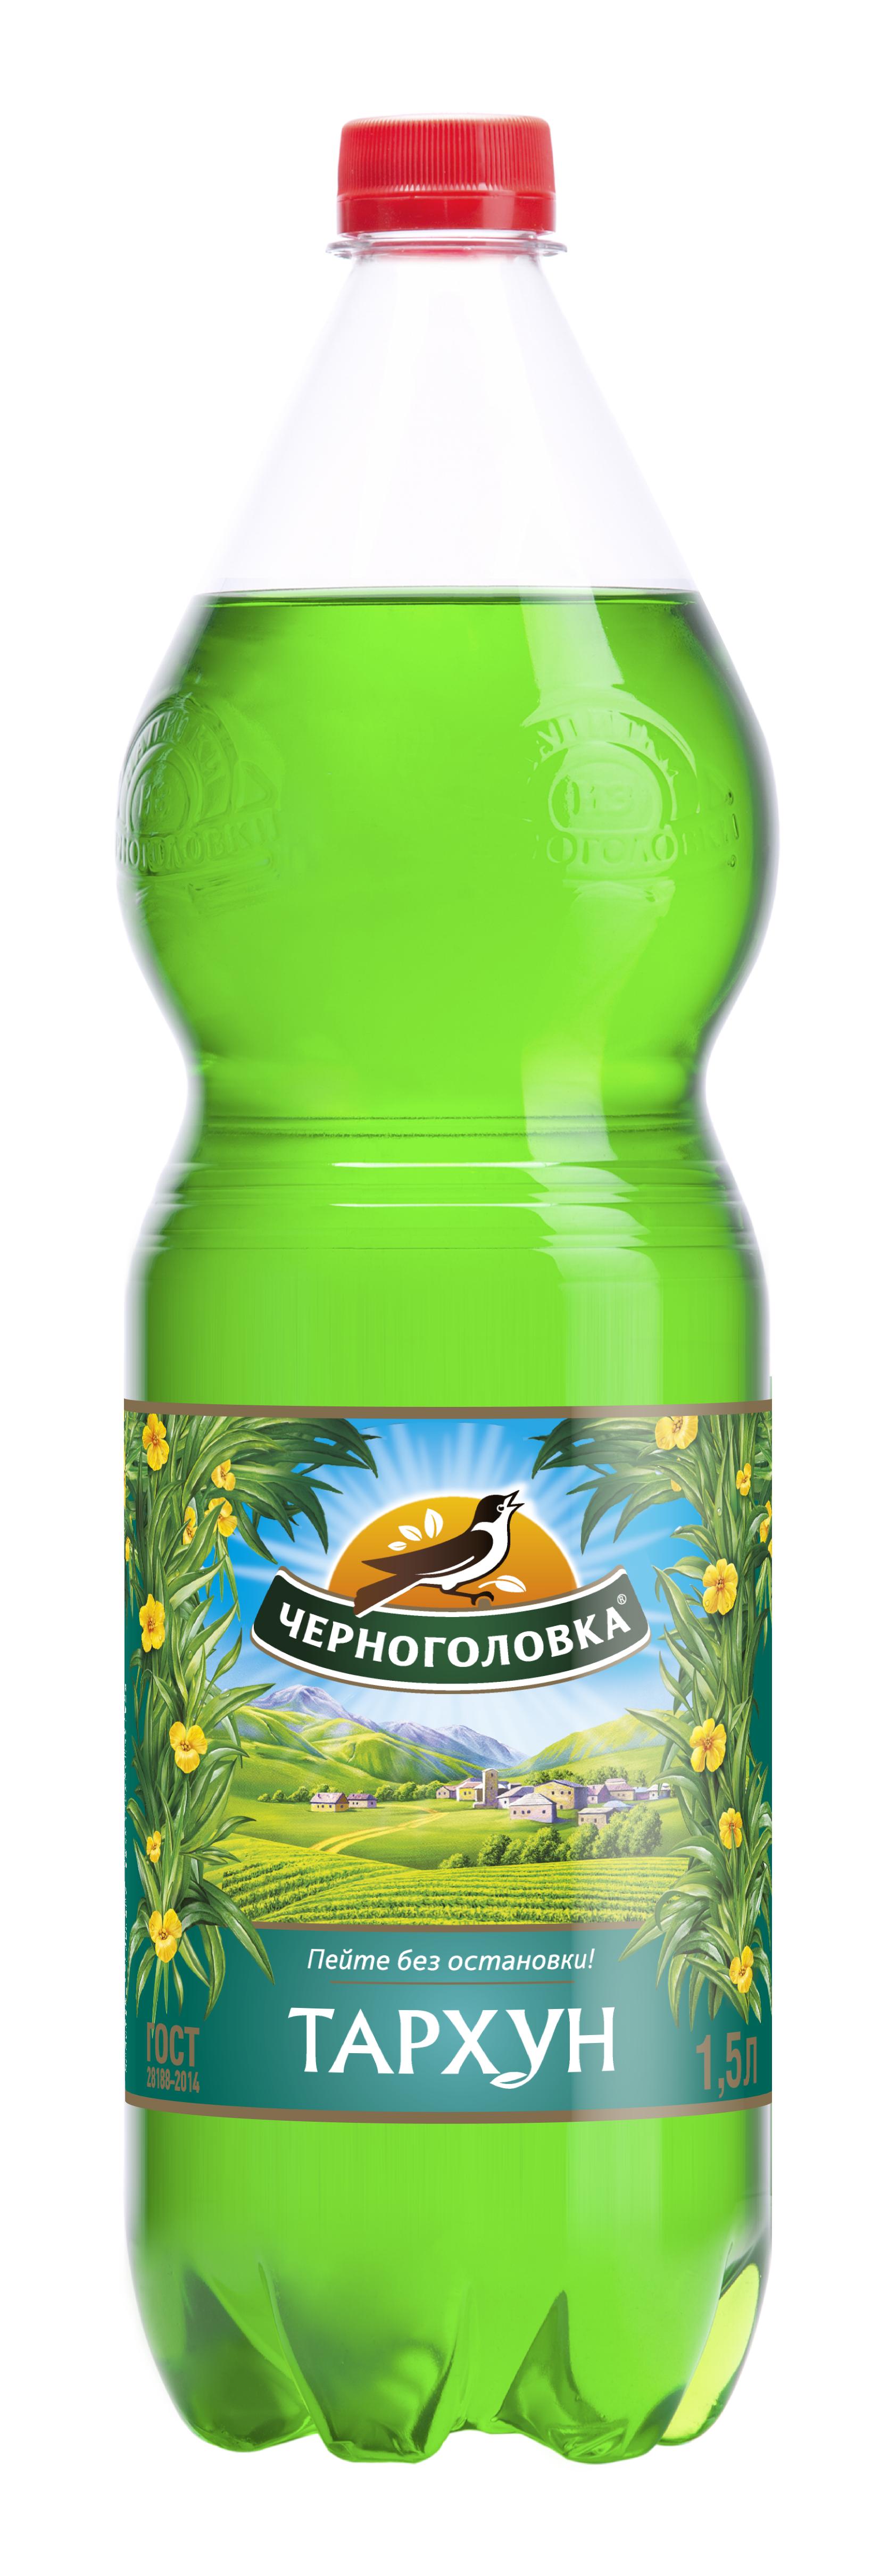 Газированный напиток Тархун Напитки из Черноголовки, 1,5 л., ПЭТ